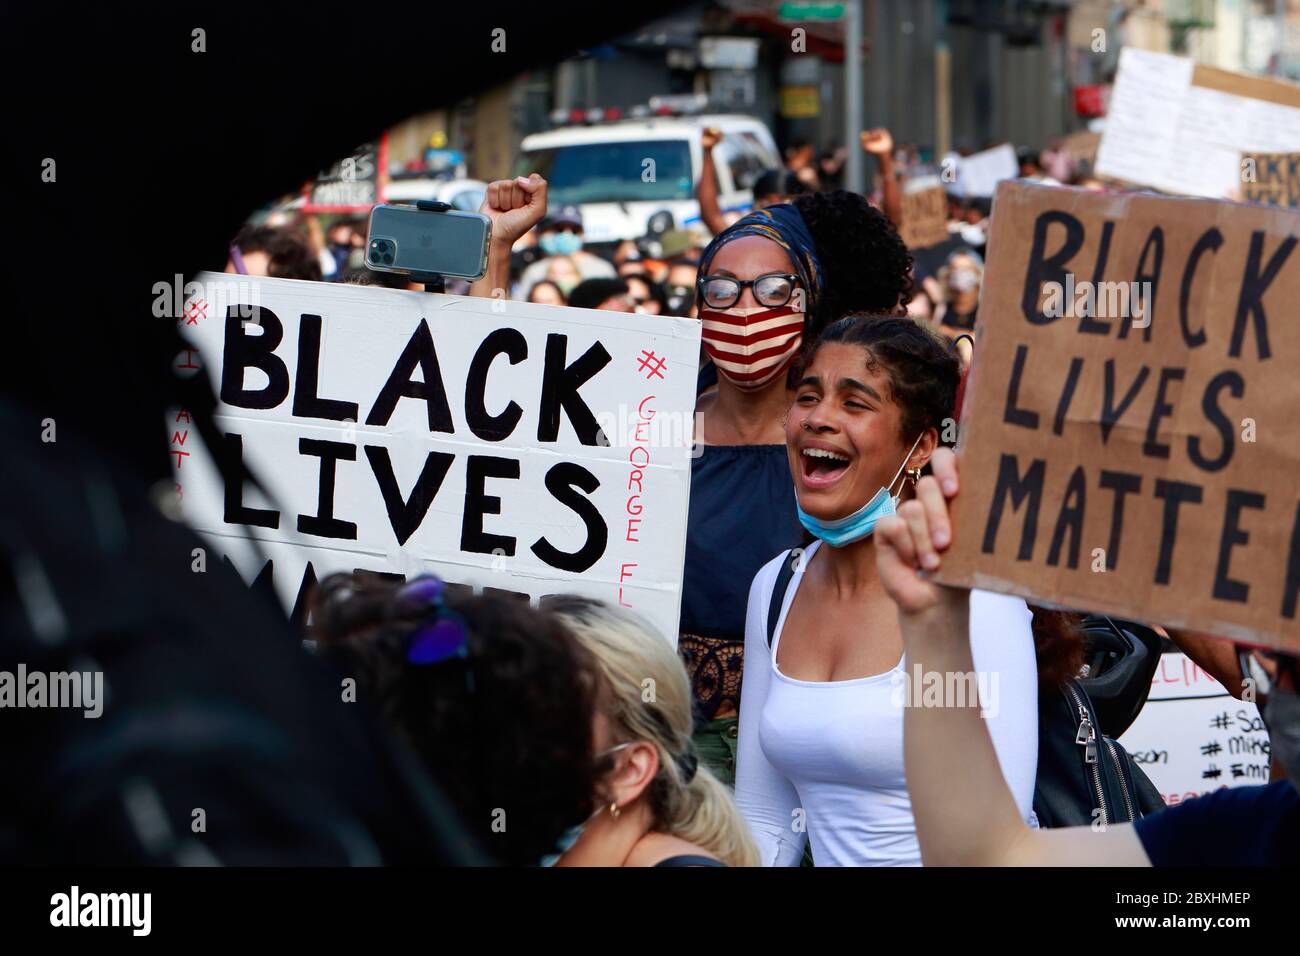 New York, NY 6 juin 2020. Entourée de signes « Black Lives Matter », une femme s'élance dans une marche de solidarité Black Lives Matter à travers Manhattan pour appeler à la justice dans une série récente de meurtres de la police américaine : George Floyd, Breonna Taylor et d'innombrables autres. Des milliers de personnes se sont jointes à la marche de protestation de Brooklyn, en sillonnant Manhattan, bien après un couvre-feu publié plus tôt dans la semaine pour freiner les cambriolages organisés et les pillages. 6 juin 2020 Banque D'Images